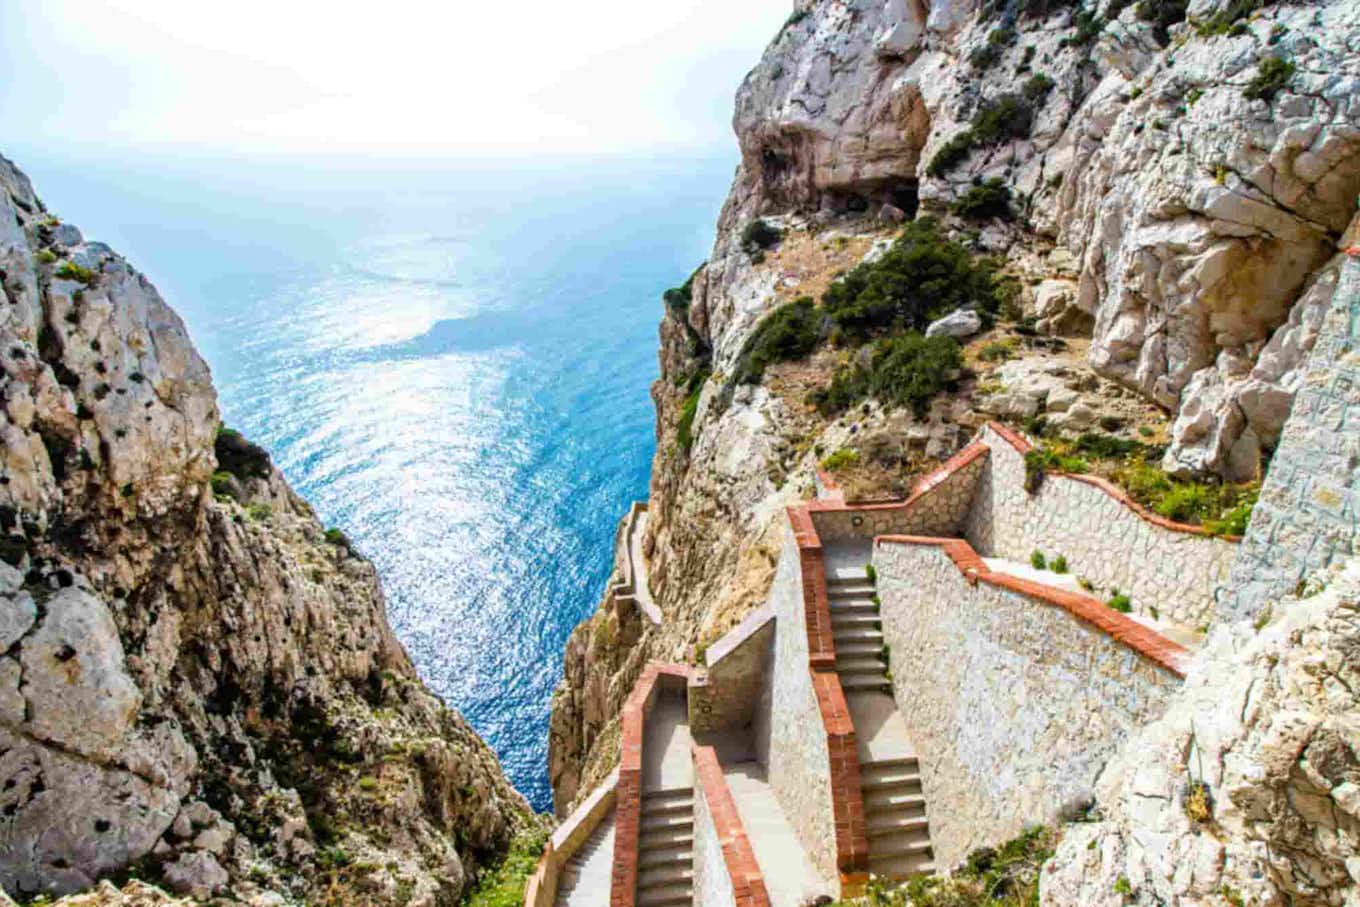 La terza fermata del tuo viaggio in Sardegna è Alghero